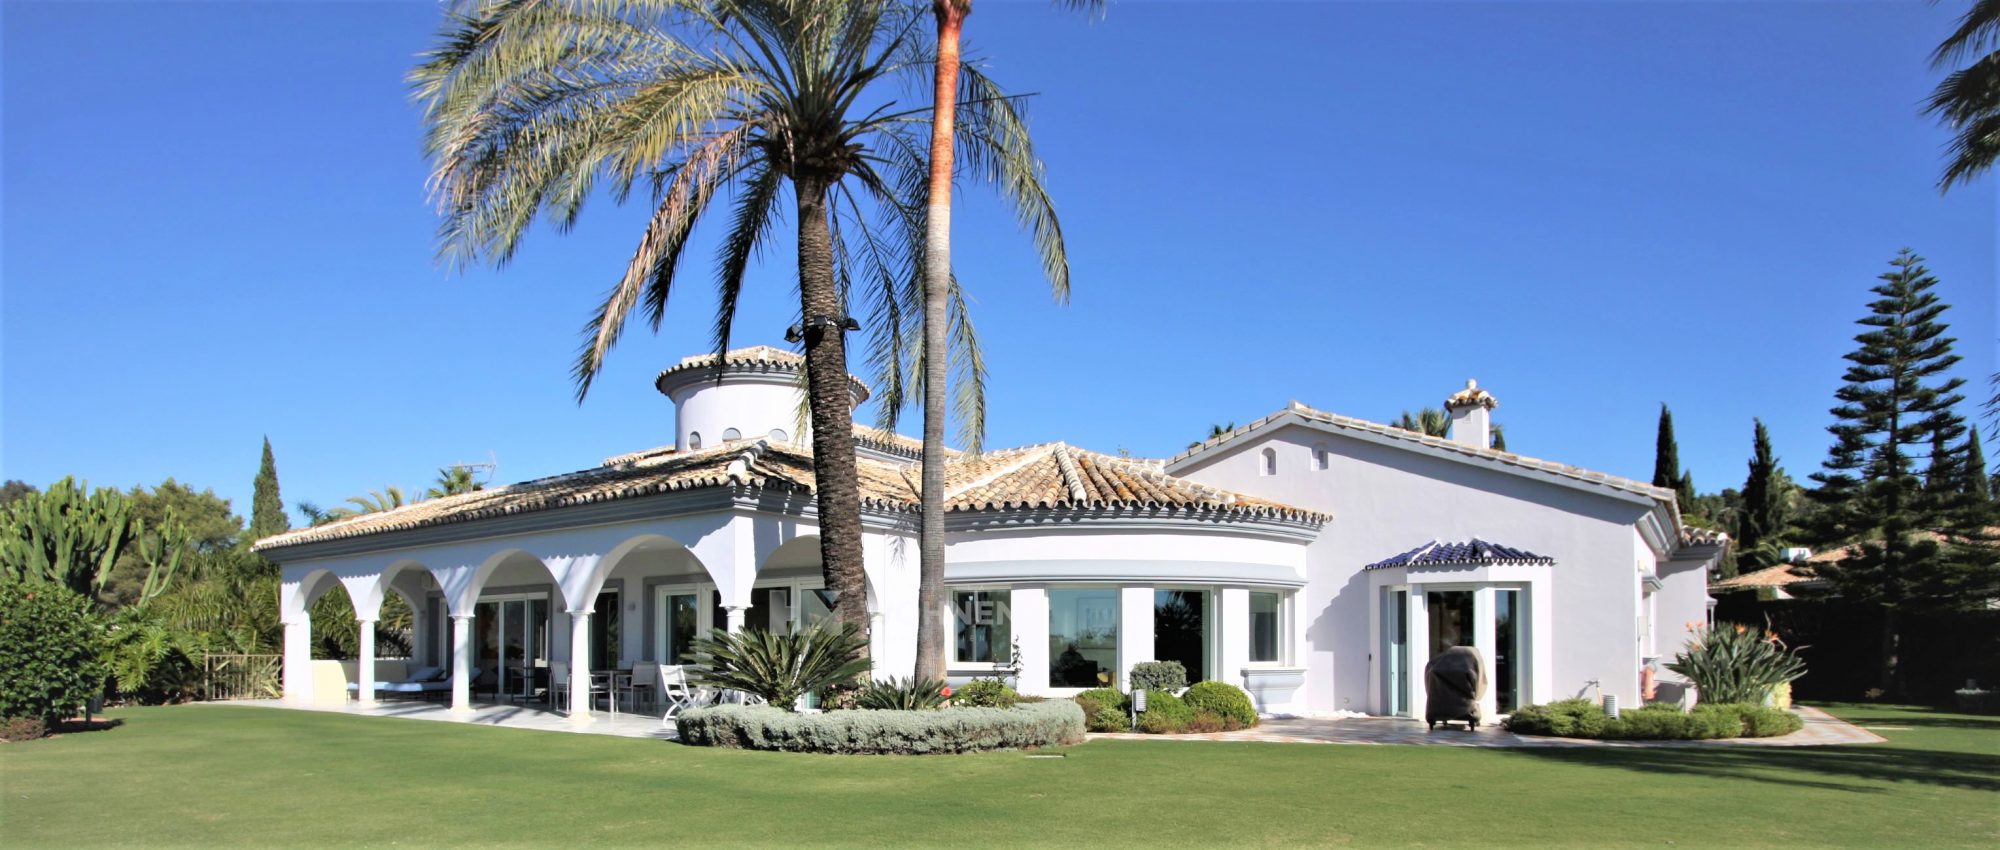 Wunderschöne moderne Villa im traditionellen andalusischen Stil in Hacienda Las Chapas – Marbella